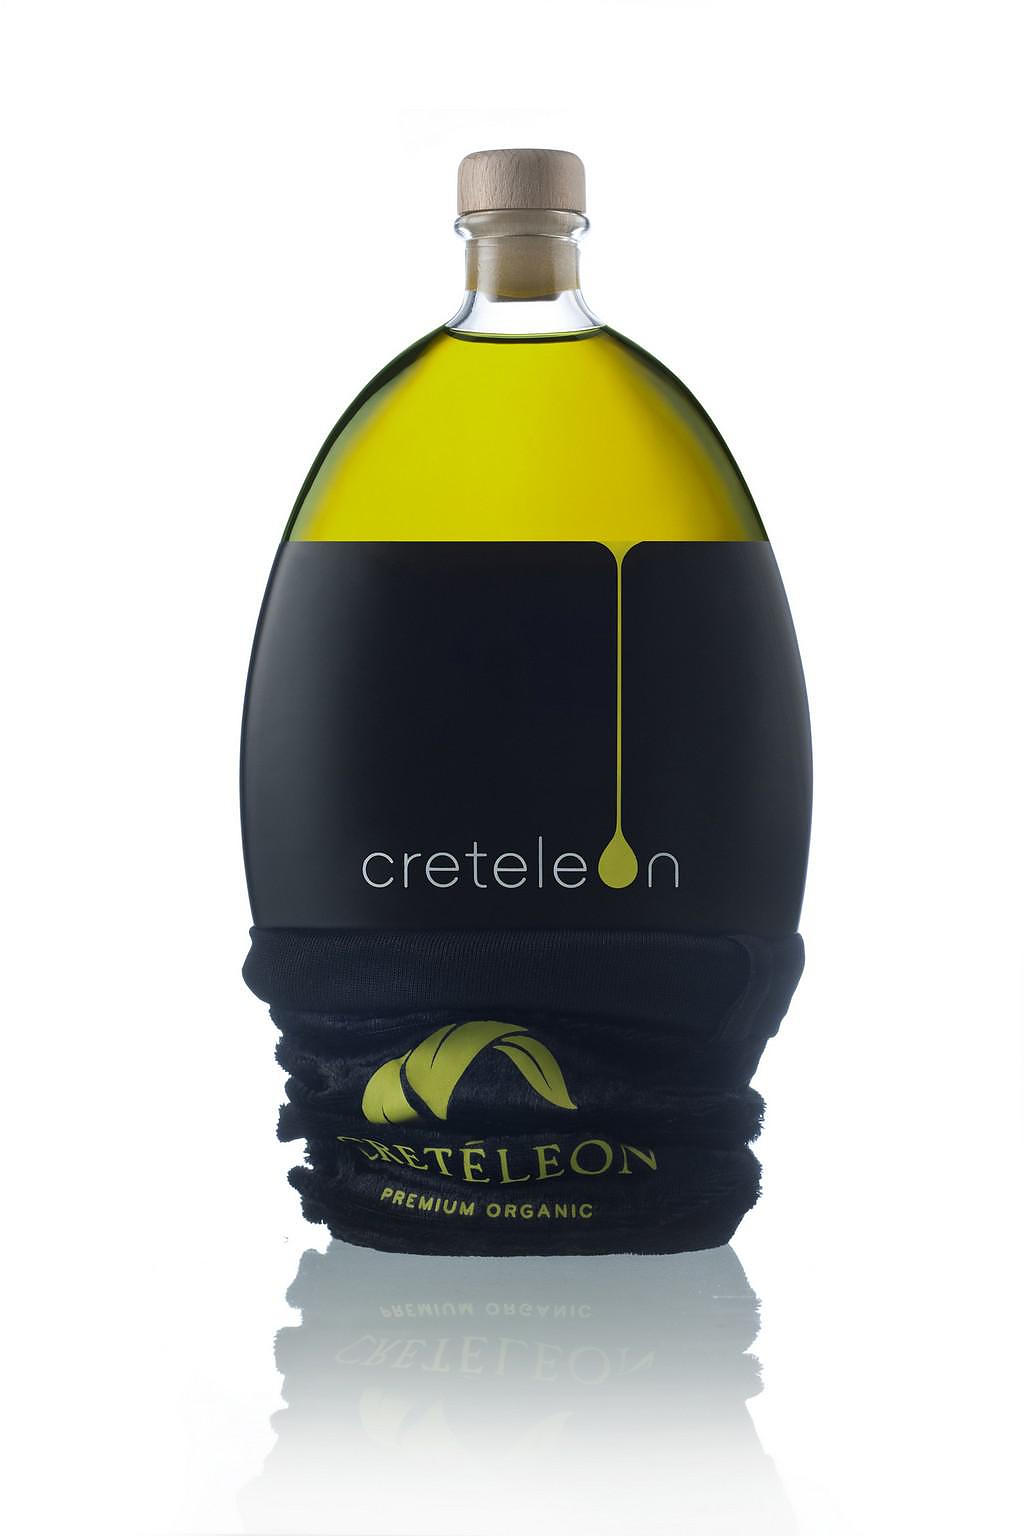 Creteleon Minimalist Olive Oil Packaging.